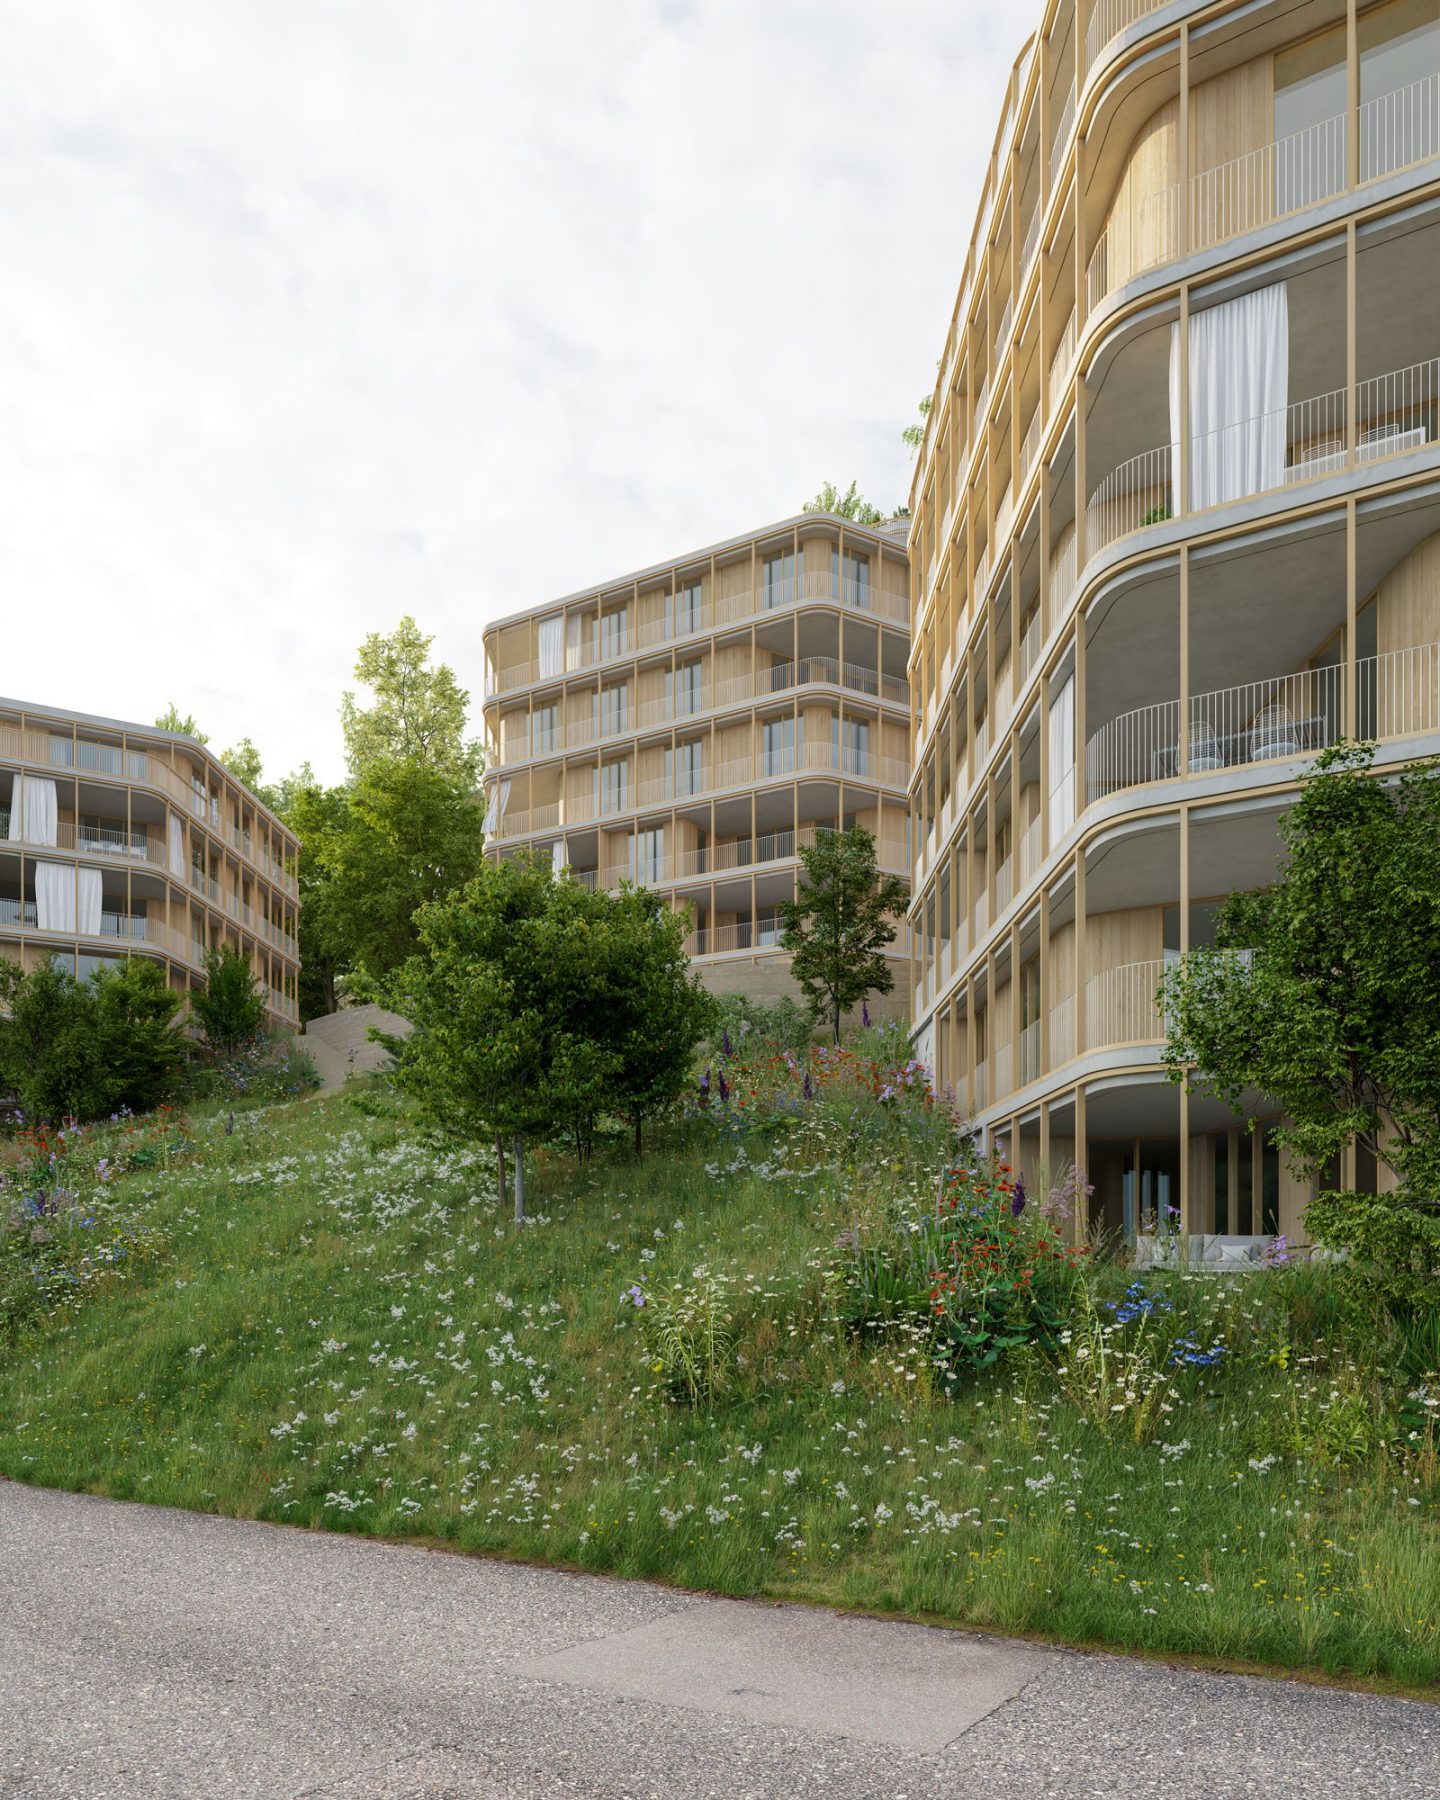 Orchard, Luzern, LU. Hildebrand Studios AG, Architecture and Urban Design in Zurich, Switzerland